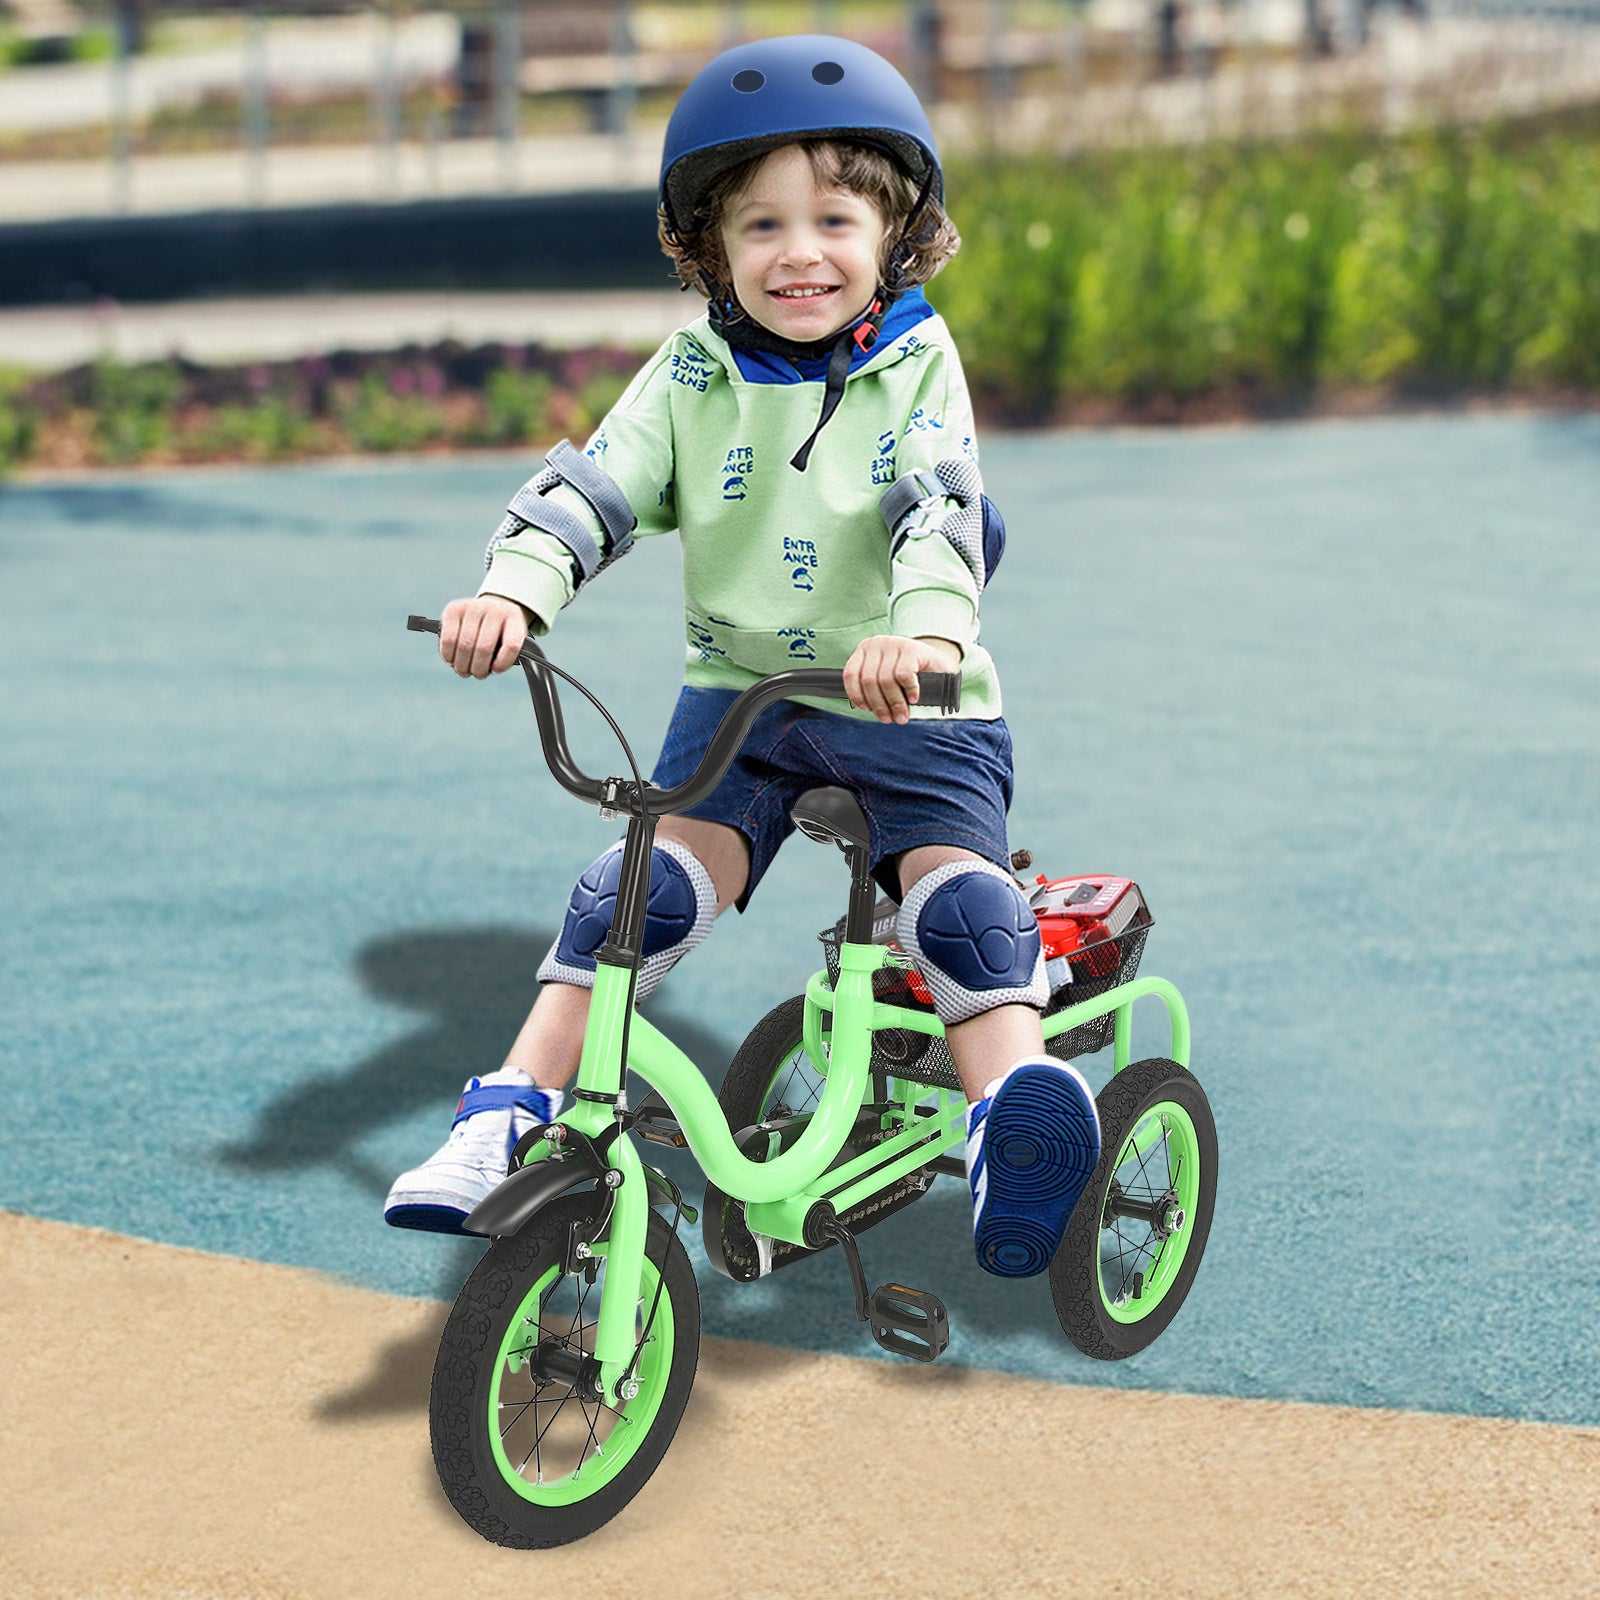 1x 3-Roue Tricycle Vélo pour Enfant Bébé 2 à 6 Ans Vert